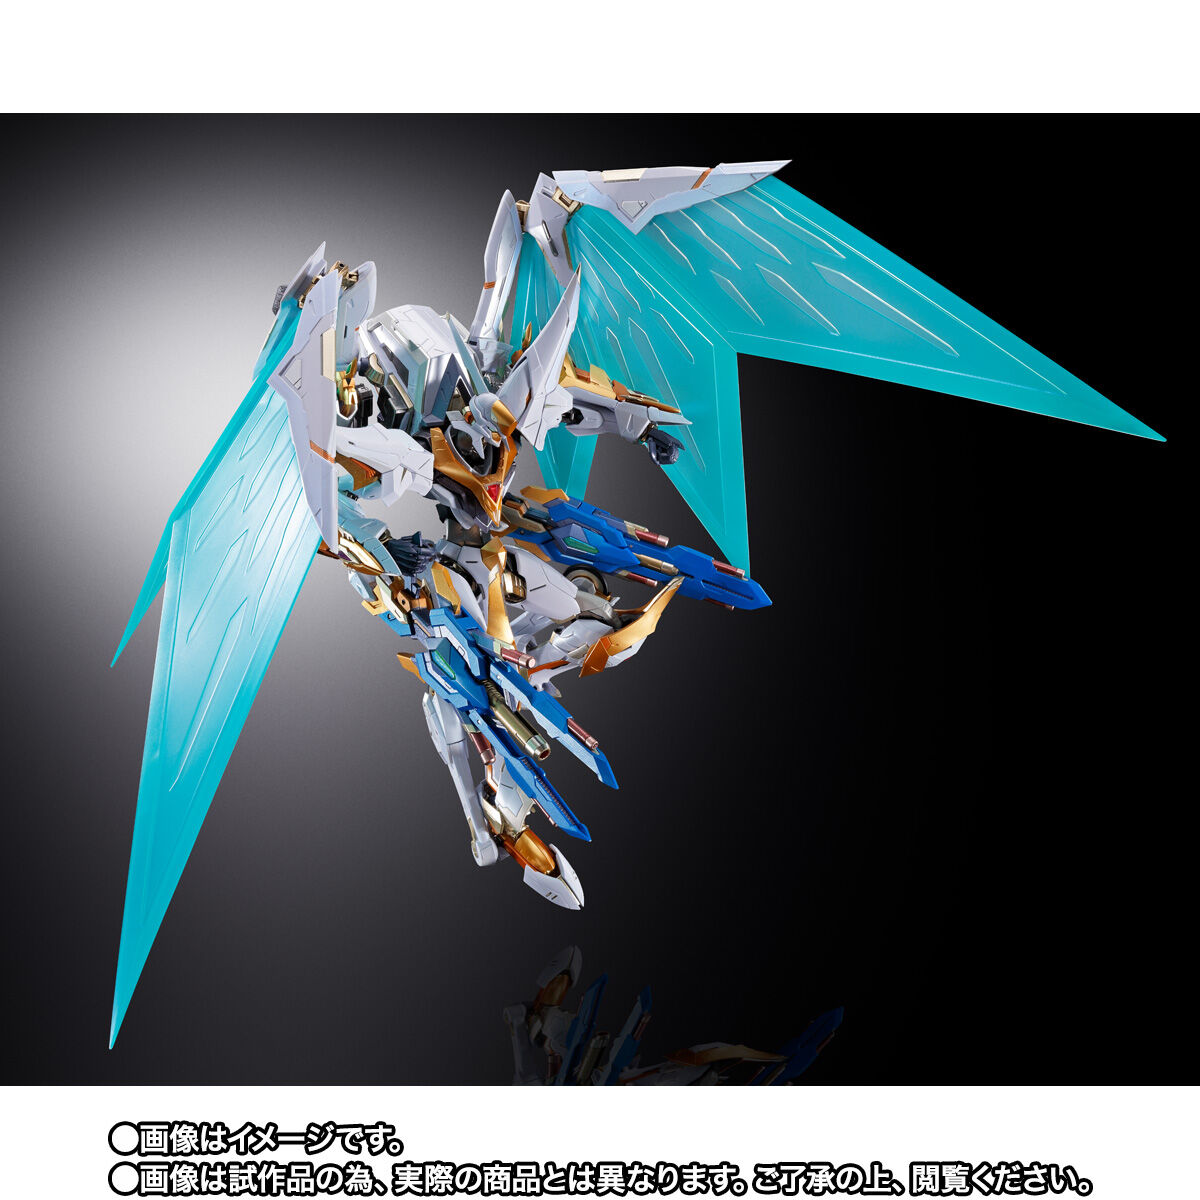 コードギアス 反逆のルルーシュR2「METAL BUILD DRAGON SCALE ランスロット・アルビオン」のフィギュア画像